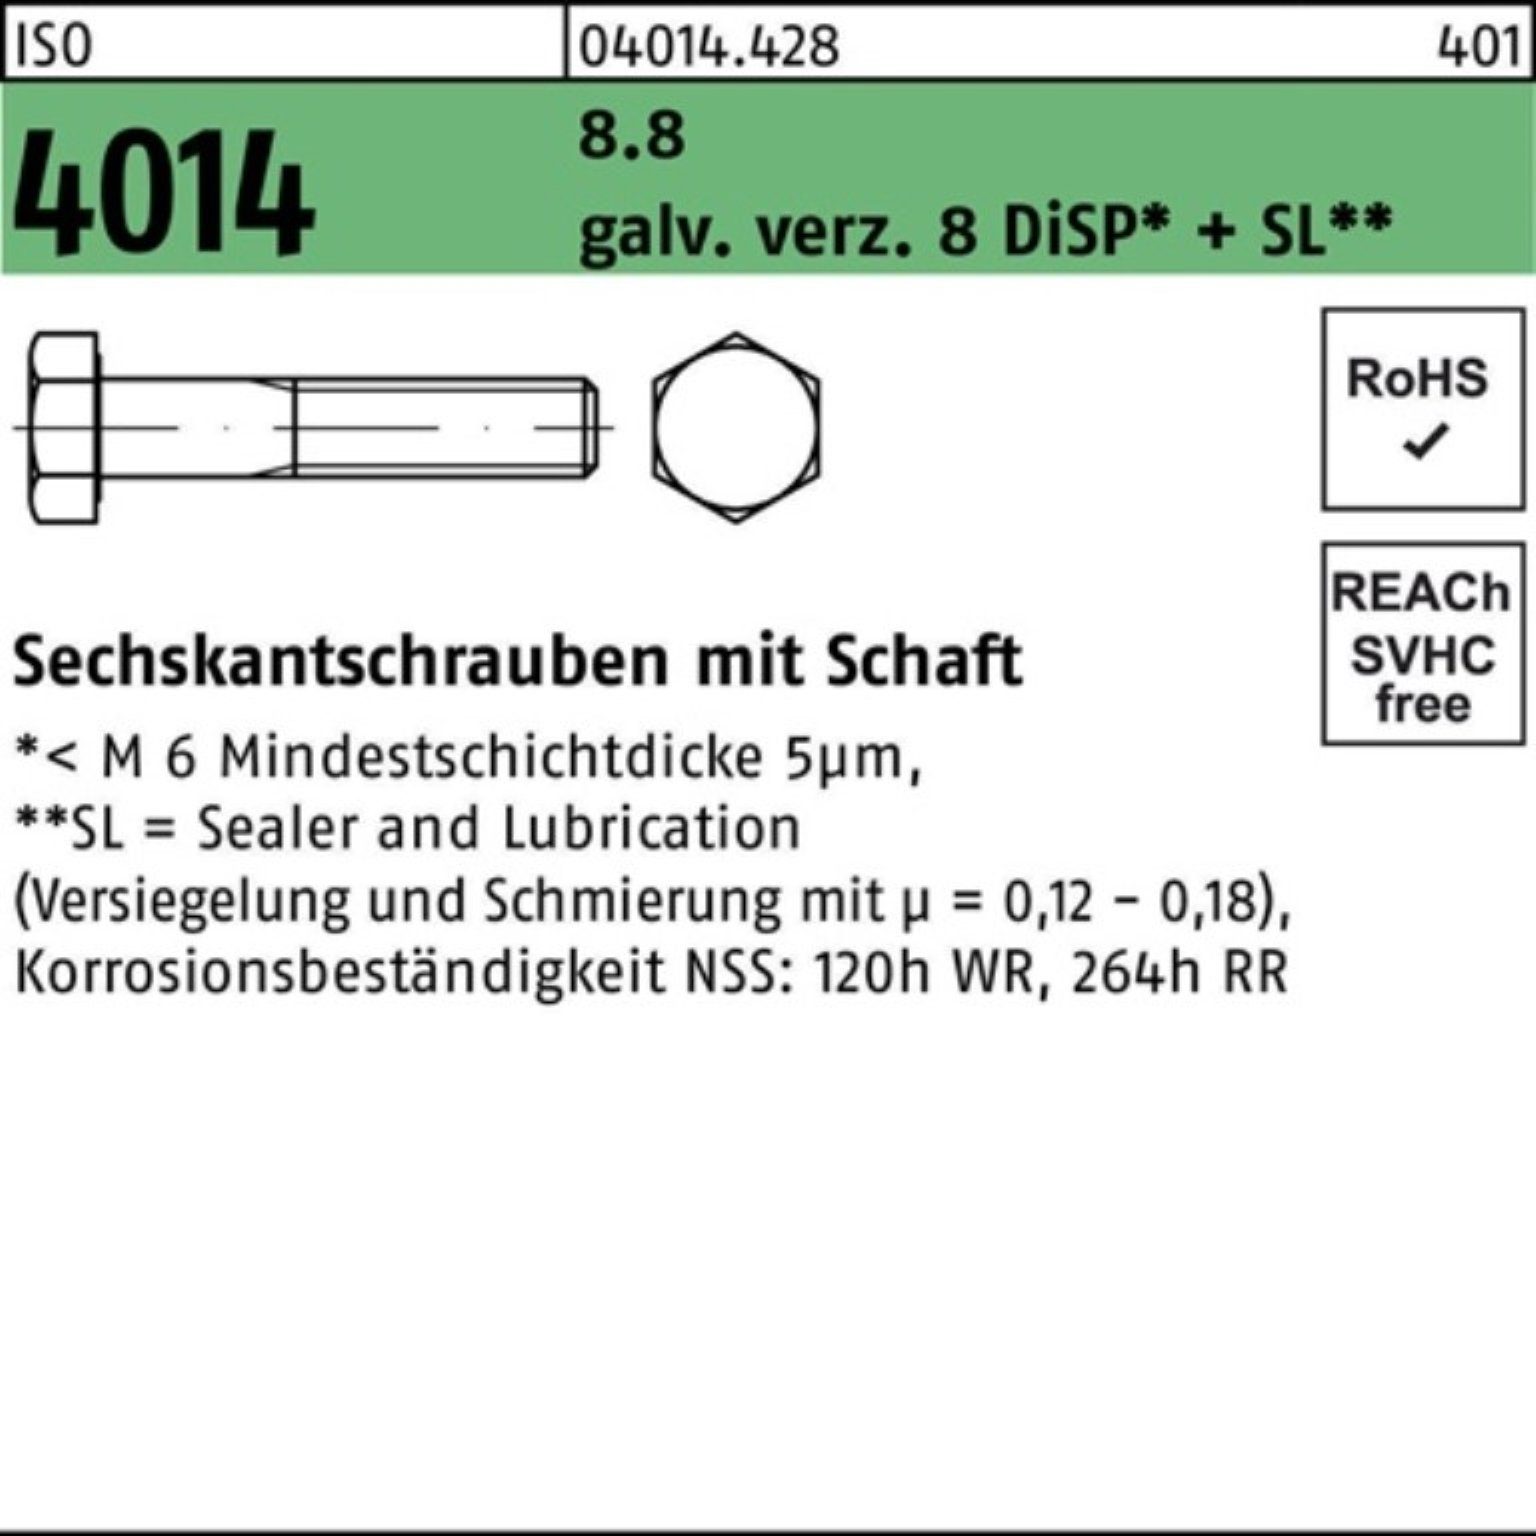 Bufab Sechskantschraube 200er Pack Sechskantschraube ISO 4014 Schaft M8x80 8.8 galv.verz. 8 Di